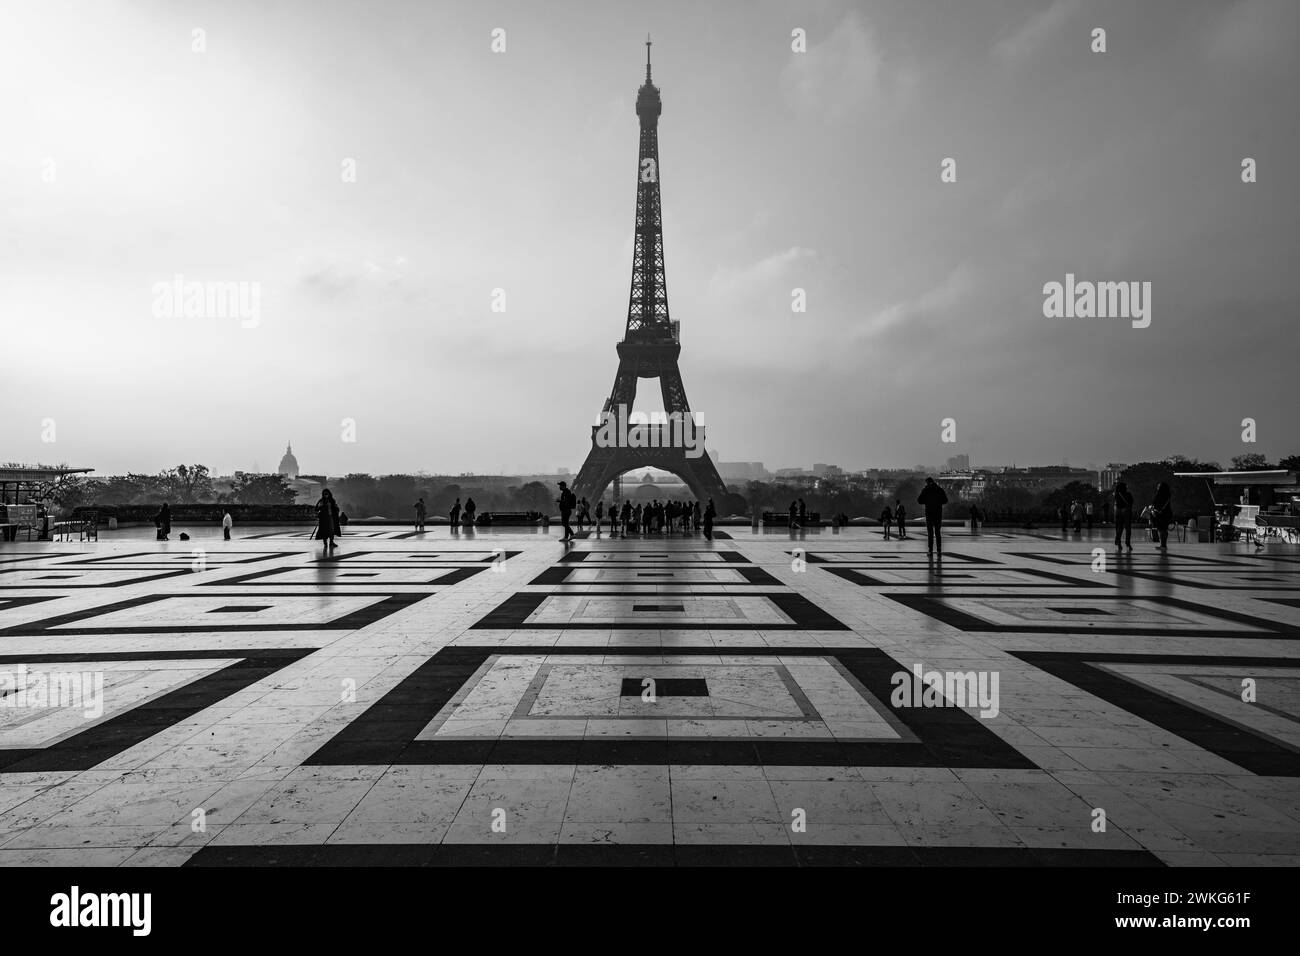 Eiffelturm, Französisch: Eiffelturm, Silhouette bei Sonnenaufgang. Blick vom Trocadero-Platz mit geometrischem Marmorpflaster. Paris, Frankreich. Schwarzweißfotografie. Stockfoto